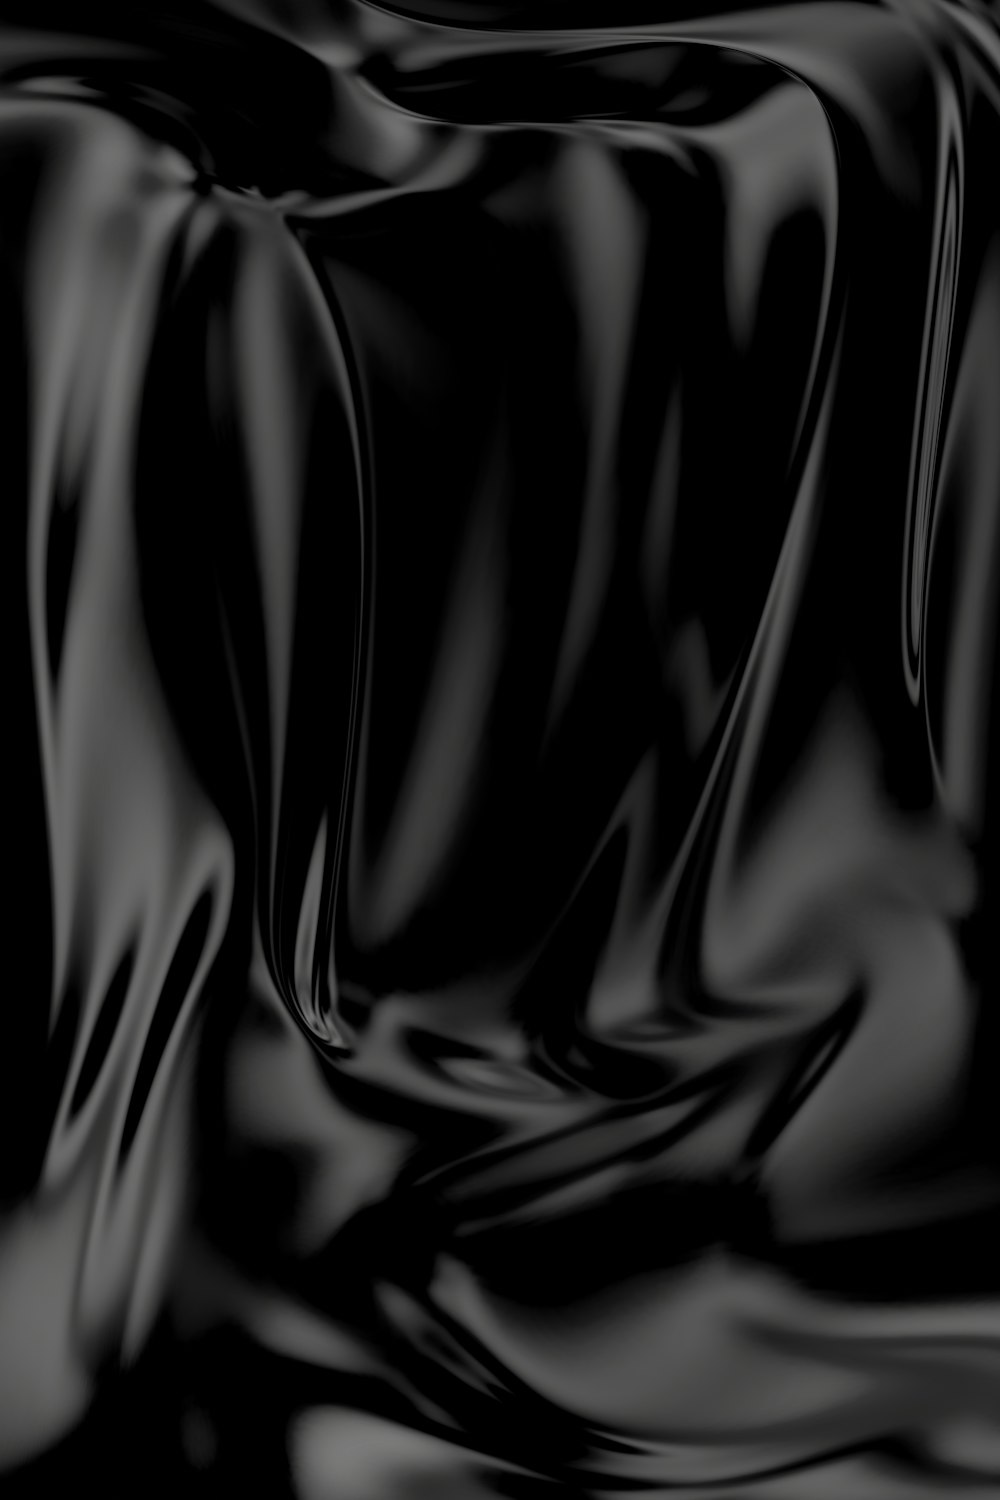 Lụa đen: Điểm nhấn của bức hình này chính là chiếc vải lụa đen sang trọng và quyến rũ. Bạn sẽ bị cuốn hút bởi sự tinh tế và độc đáo của loại vải này. Hãy cùng chiêm ngưỡng độ mịn màng và mềm mại của lụa đen trên hình ảnh này.